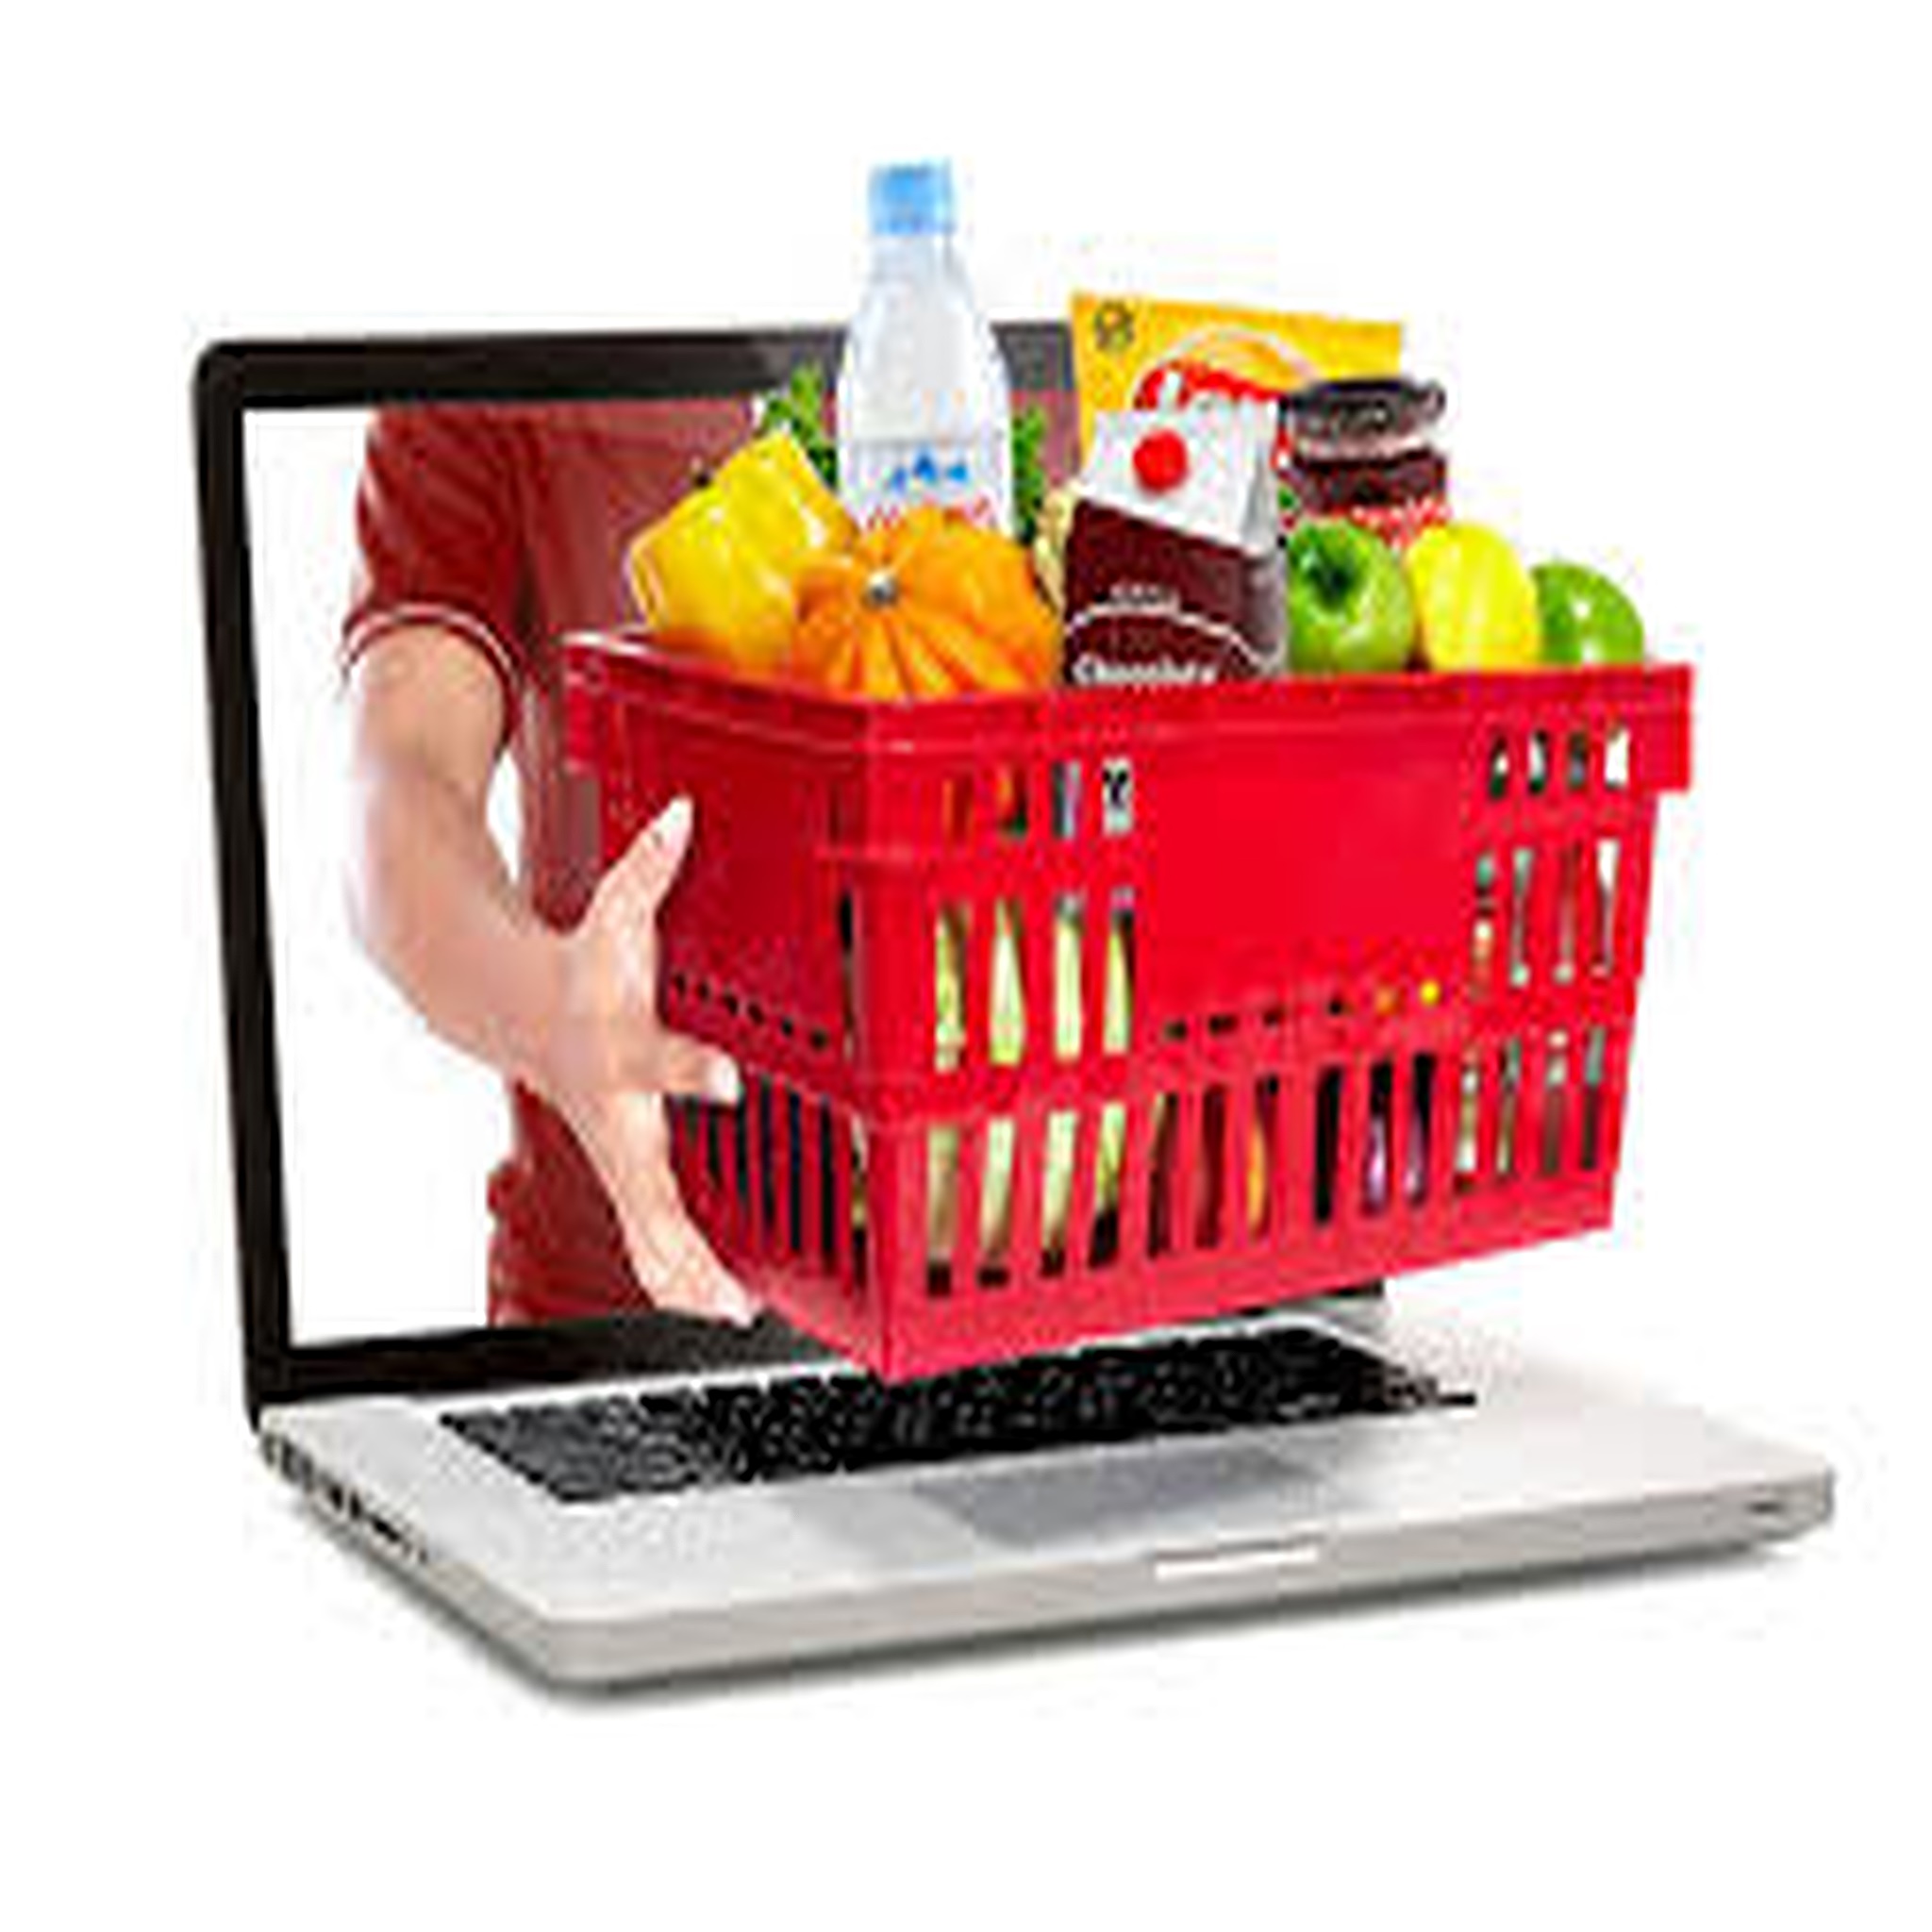 Sizin için İkinci bi Dükkan, Online  Kayıt Ol,  Yemek Siparisi Ver!